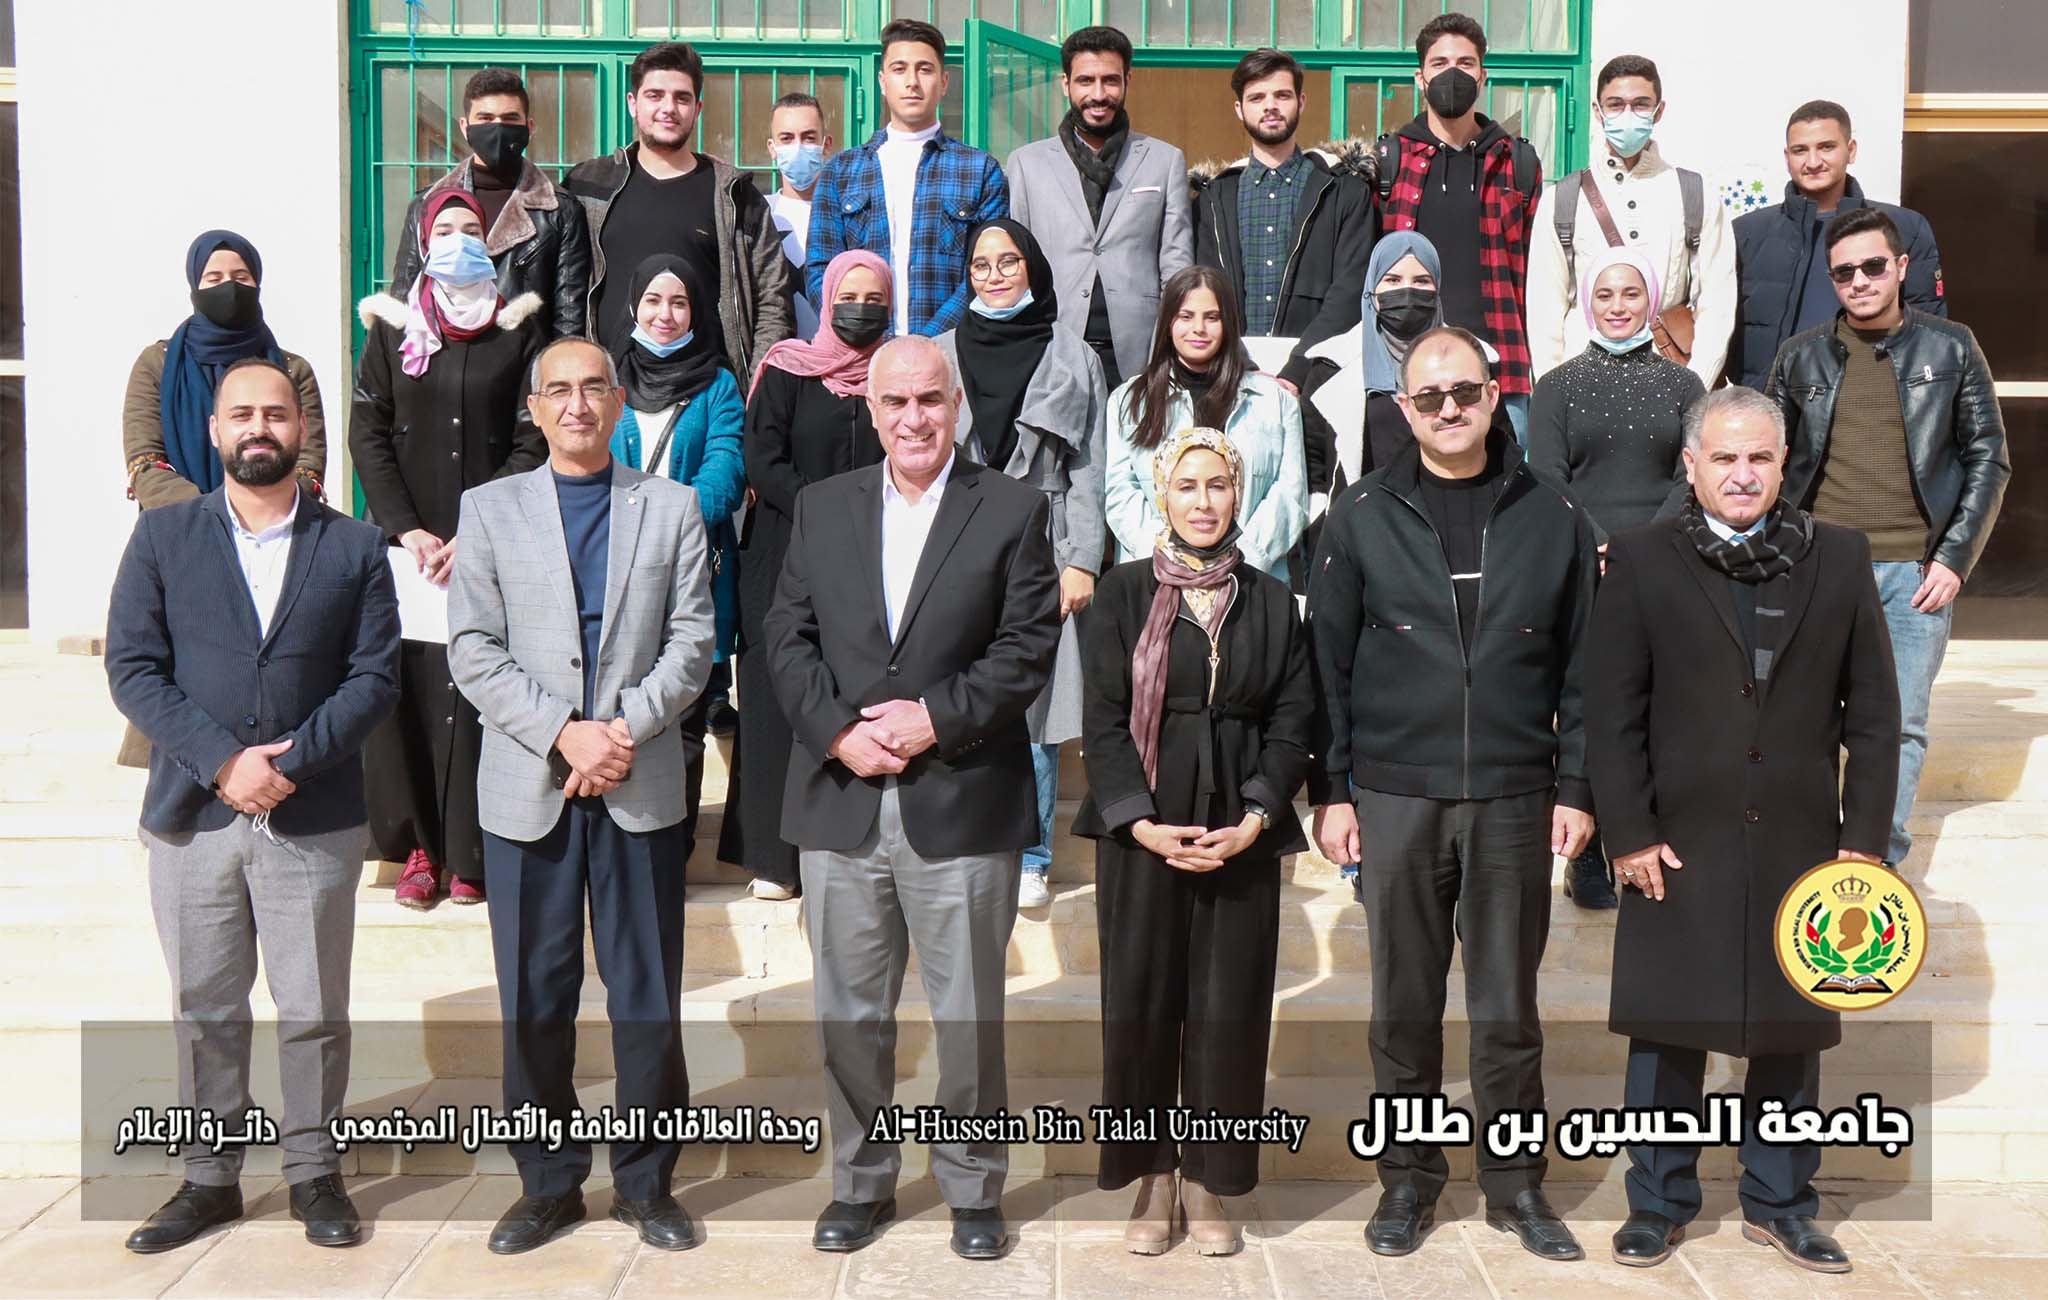  رئيس جامعة الحسين بن طلال يرعى حفل تخريج الطلبة المشاركين في برنامج المواطنة